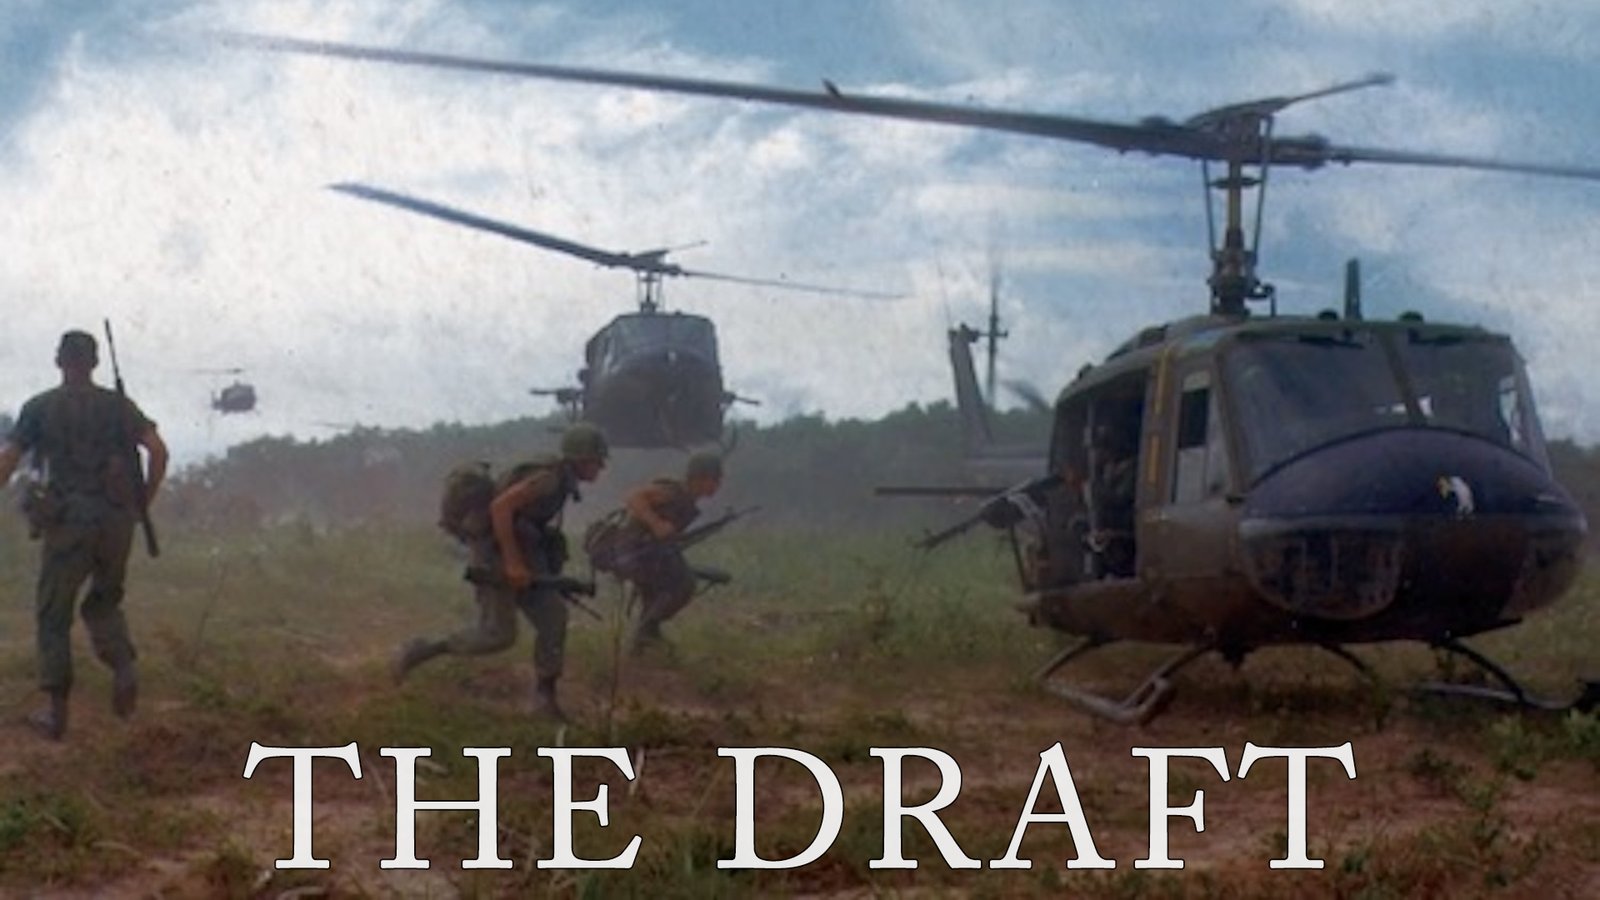 The Draft - An Award-Winning Play About the Vietnam War